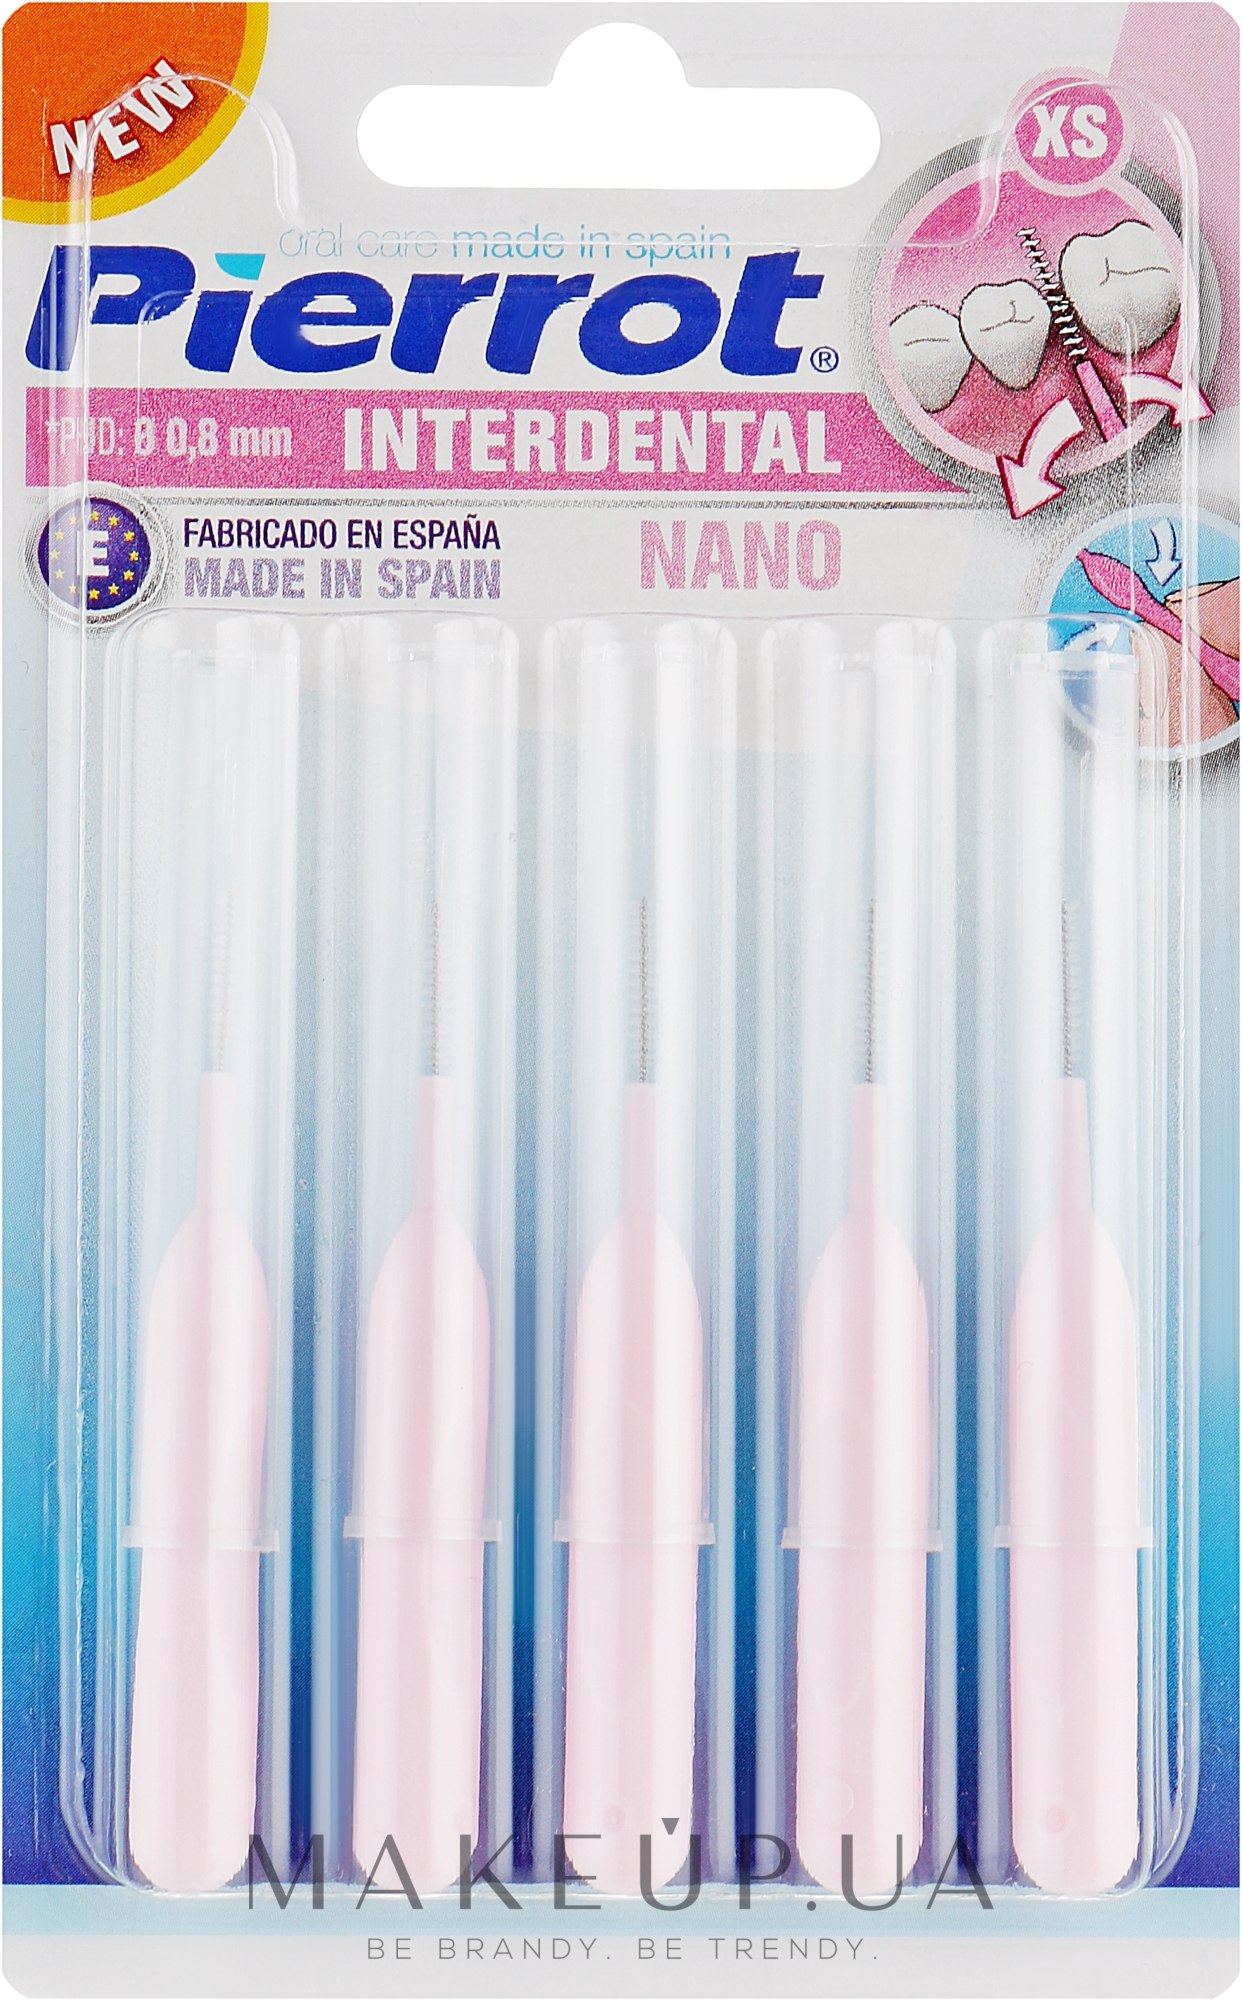 Міжзубні йоржики 0.8 мм - Pierrot Interdental Nano — фото 5шт